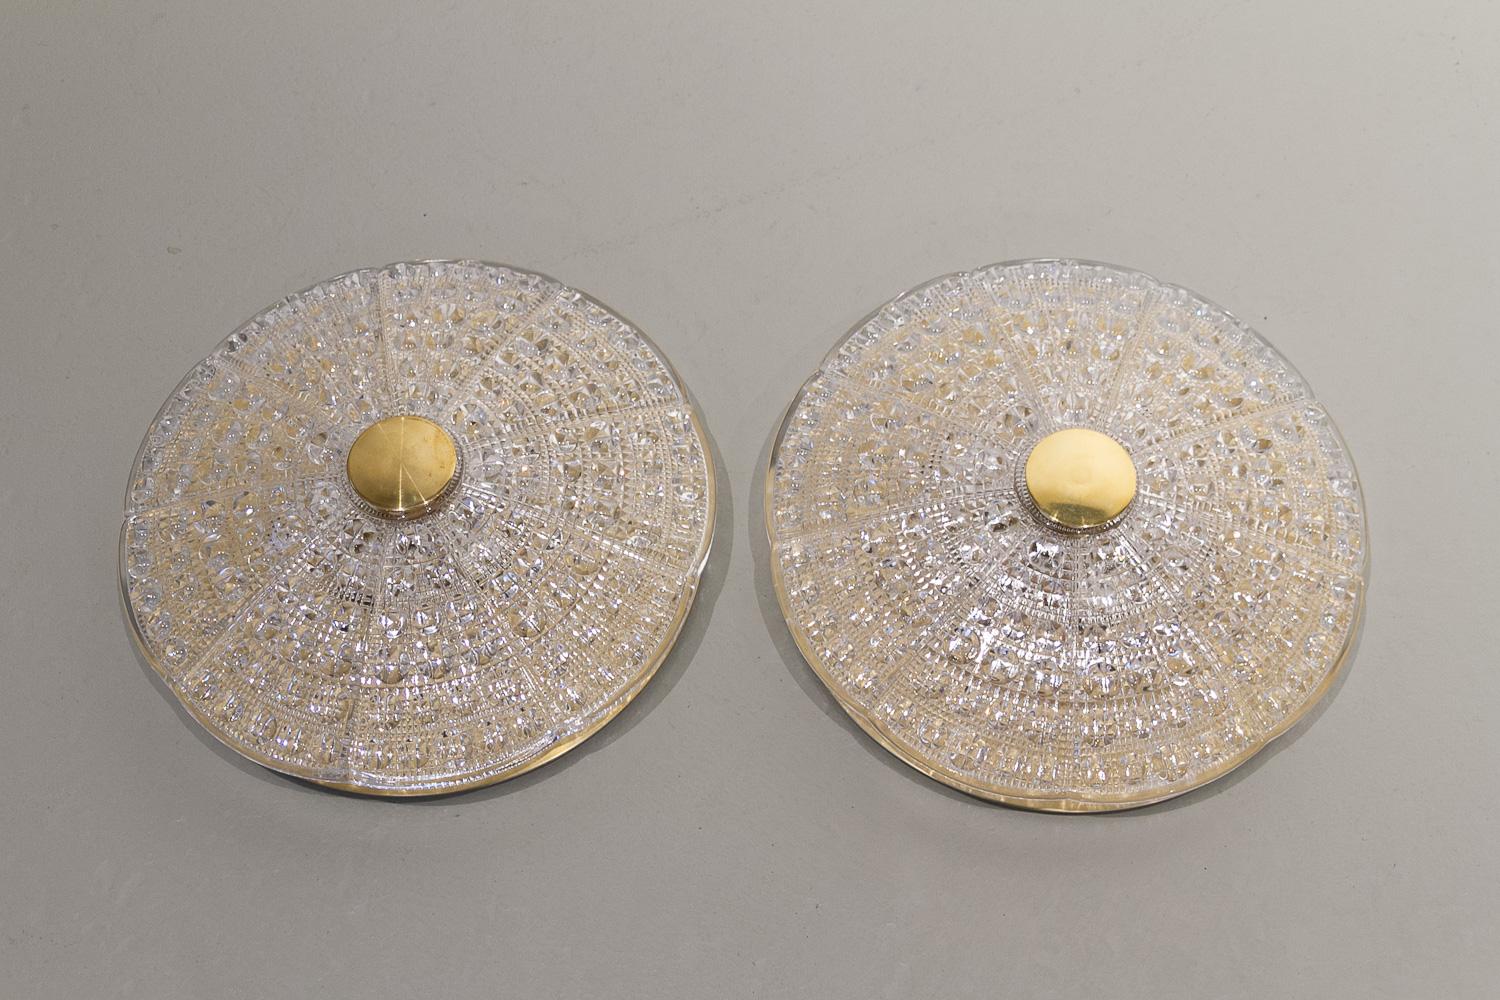 Einbau-Deckenleuchten aus Kristall von Carl Fagerlund, 1960er Jahre. Satz von 2.
Paar große skandinavisch-moderne, klare, doppelt strukturierte Kristallglasschirme von Orrefors, montiert auf patinierten Messingplatten. Sechs sternförmig angeordnete